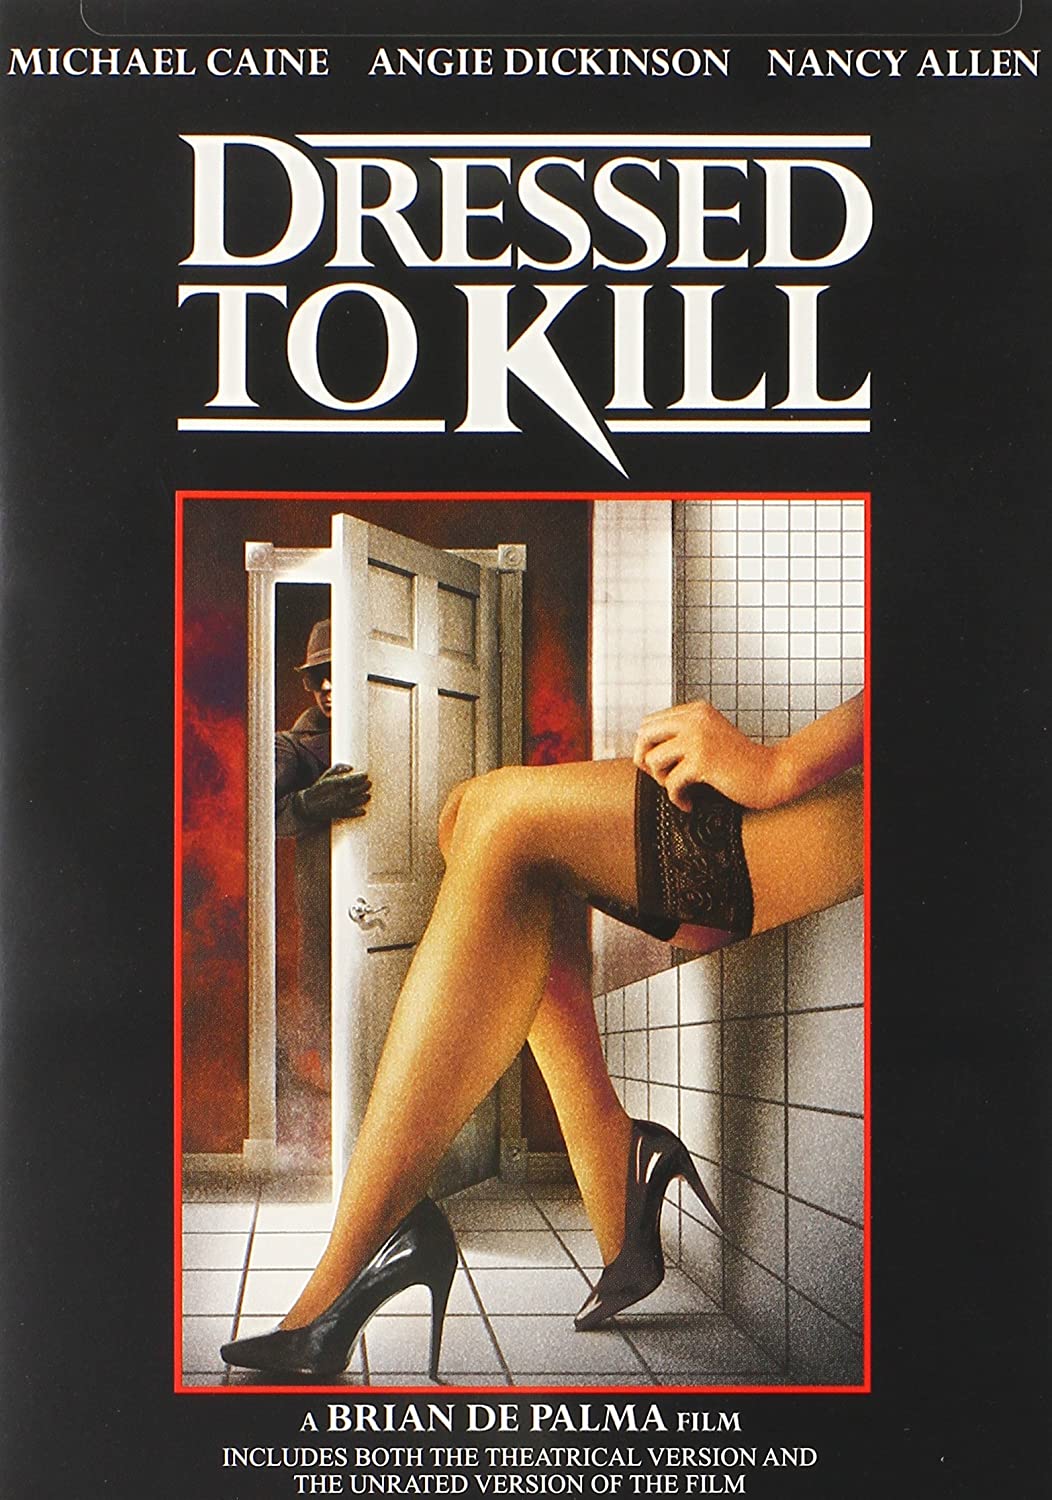 Stiahni si HD Filmy Oblecen na zabijeni / Dressed to Kill (1980) CZ/EN (1080p) = CSFD 68%